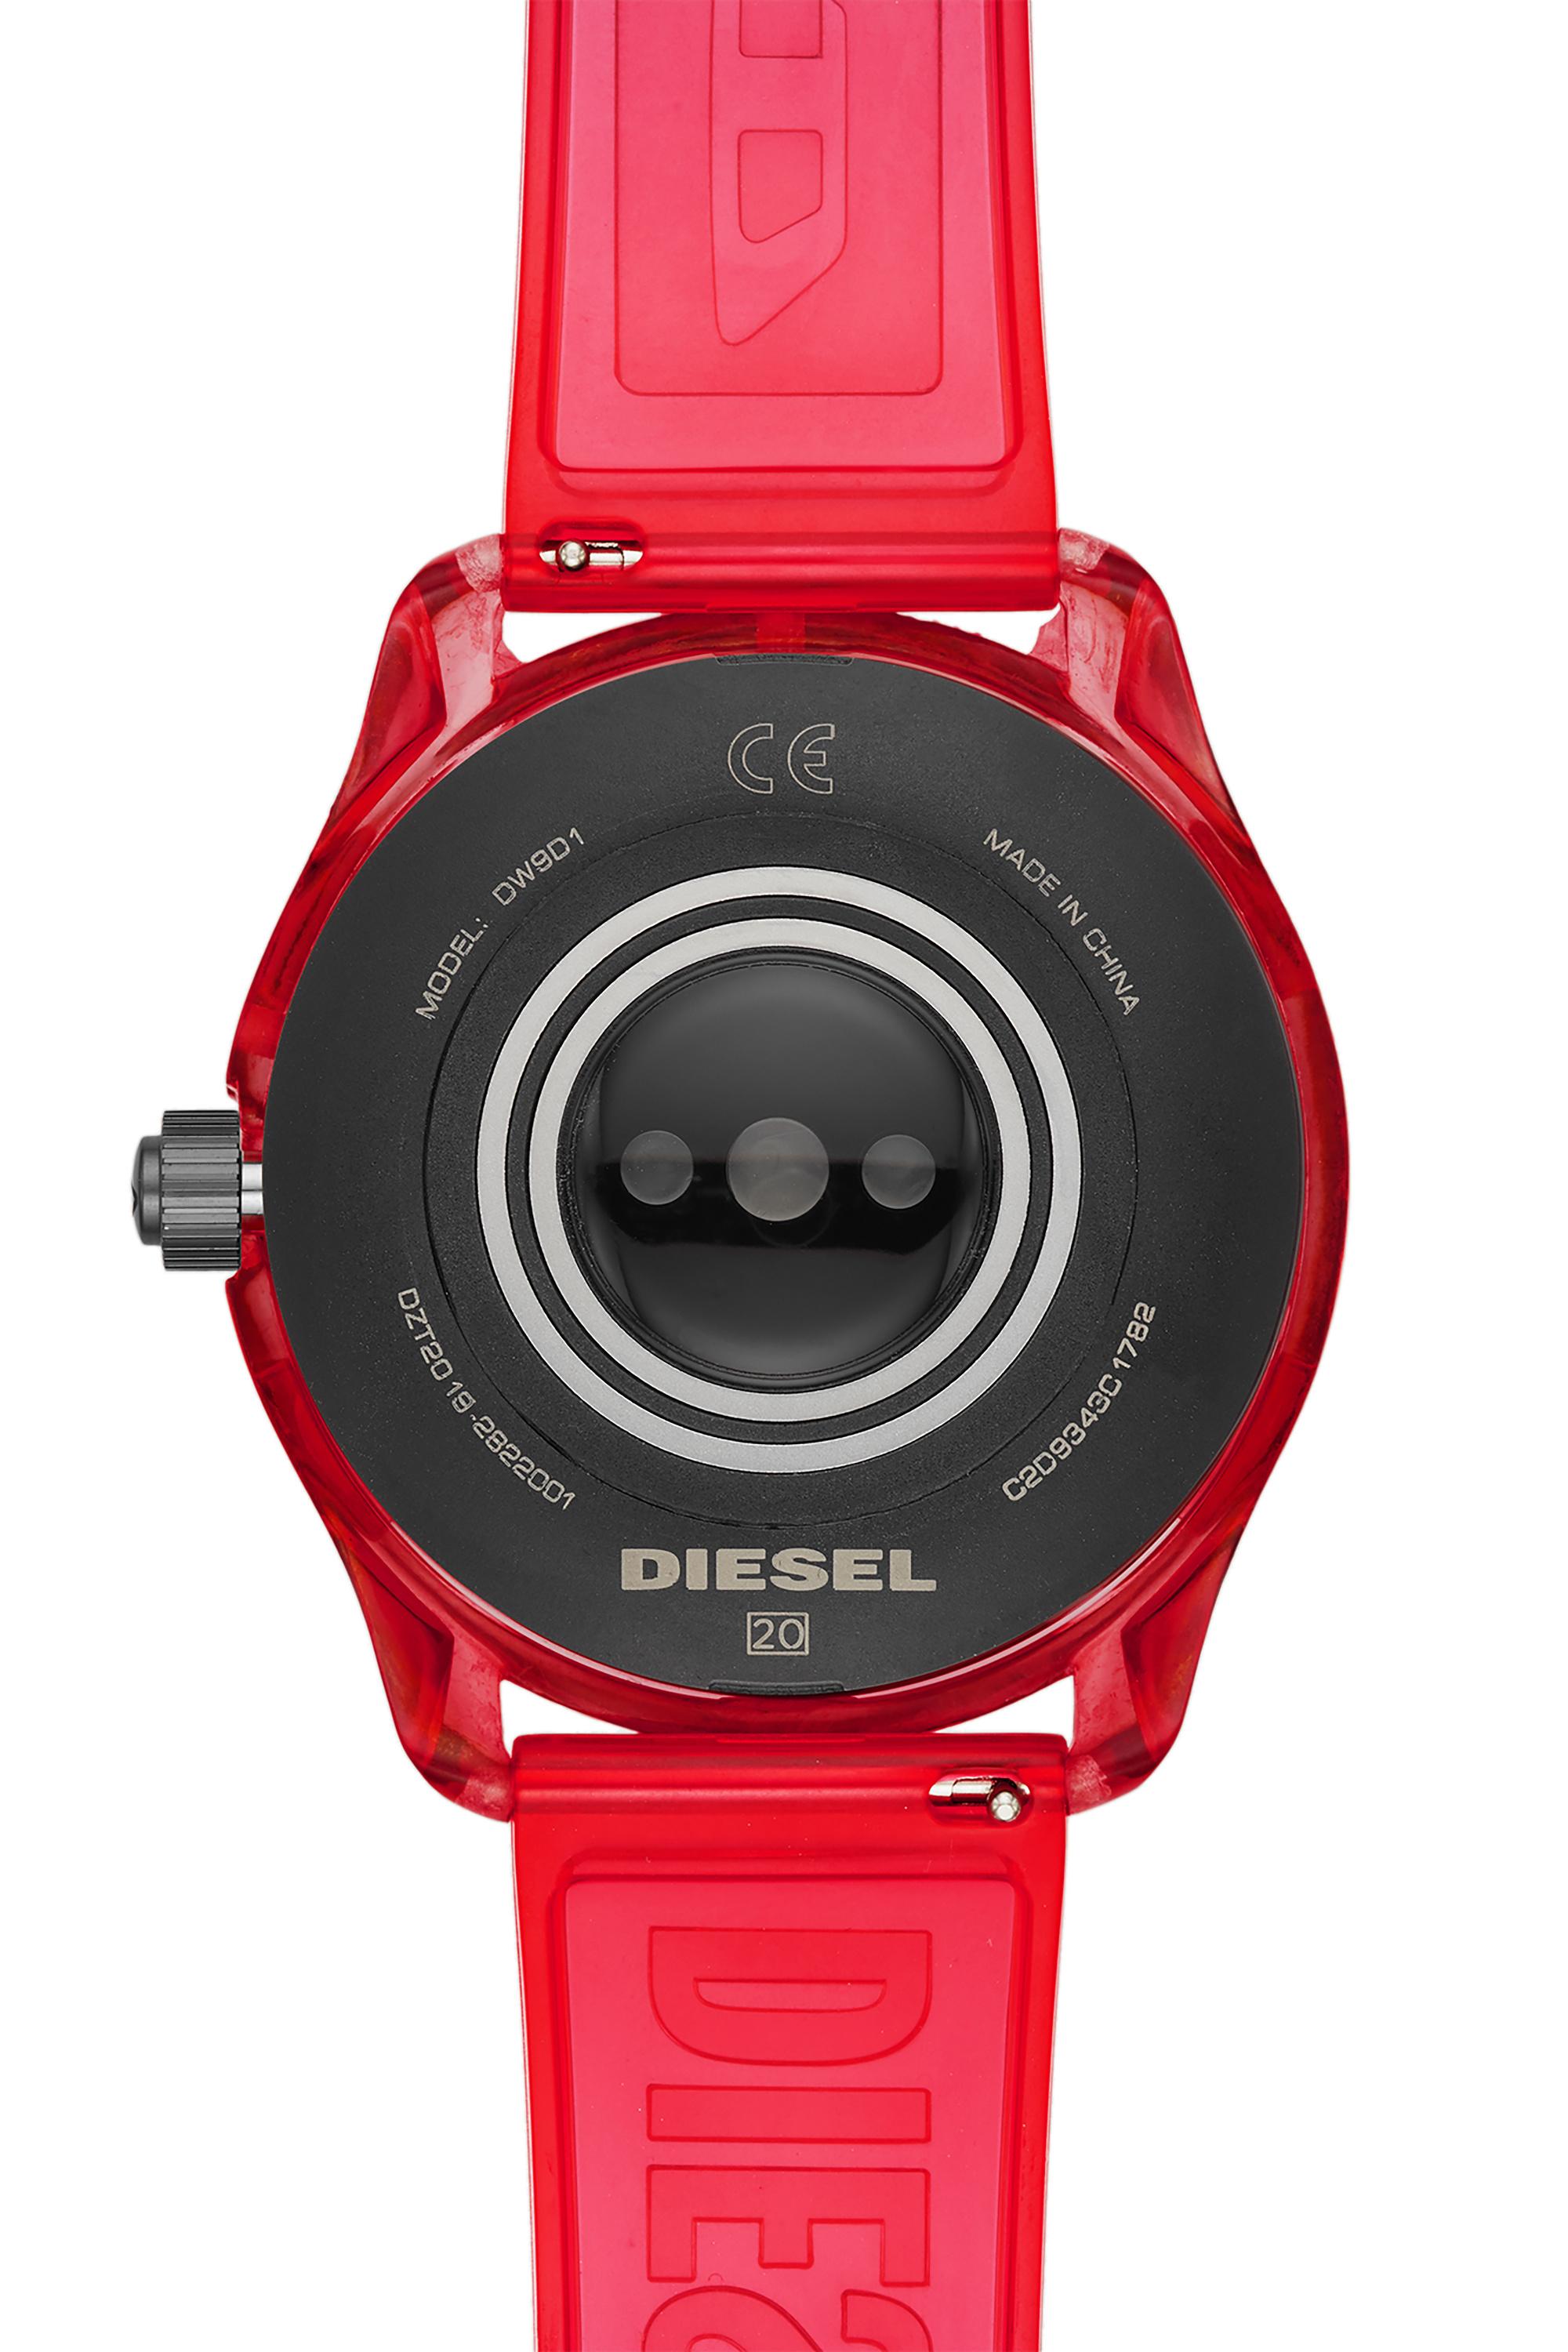 Diesel - DT2019, Rojo - Image 4